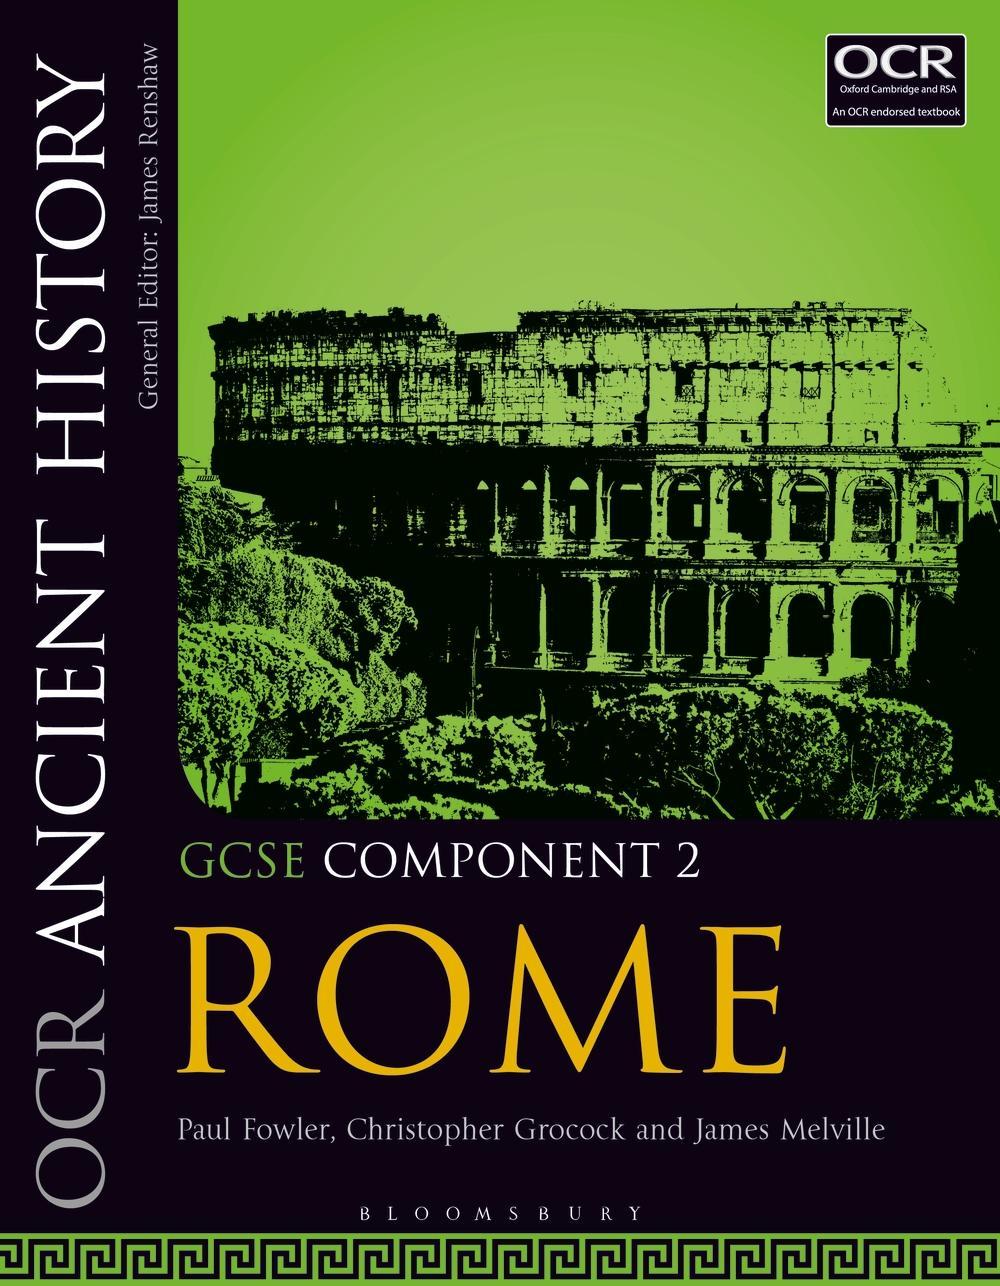 OCR Ancient History GCSE Component 2